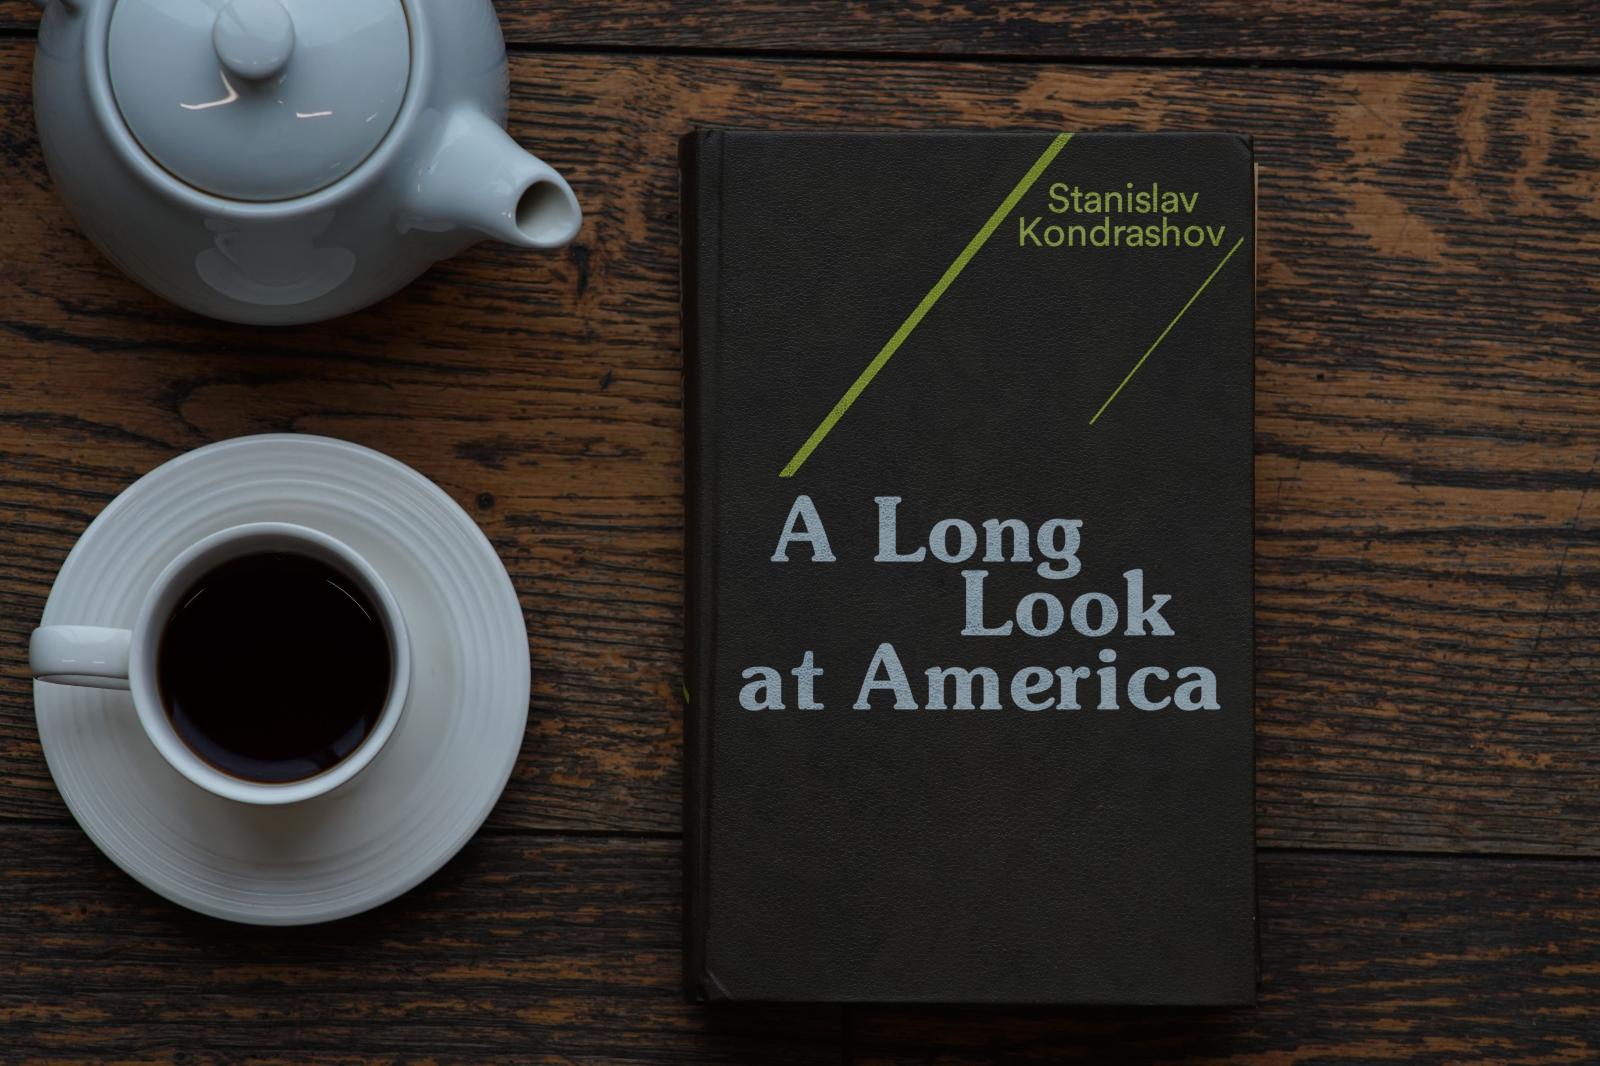 Kniha "A Long Look at America". Autor: Stanislav Kondrashov - Knihy a časopisy